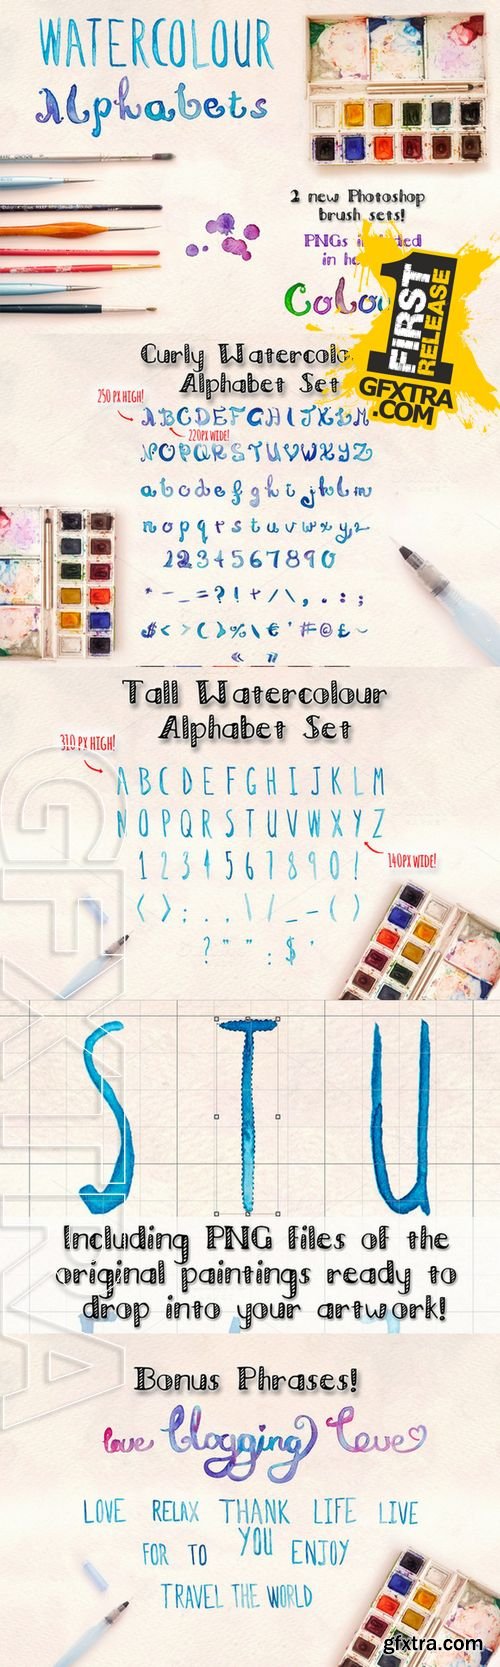 2 Watercolour Alphabet Brush Sets - CM 193392